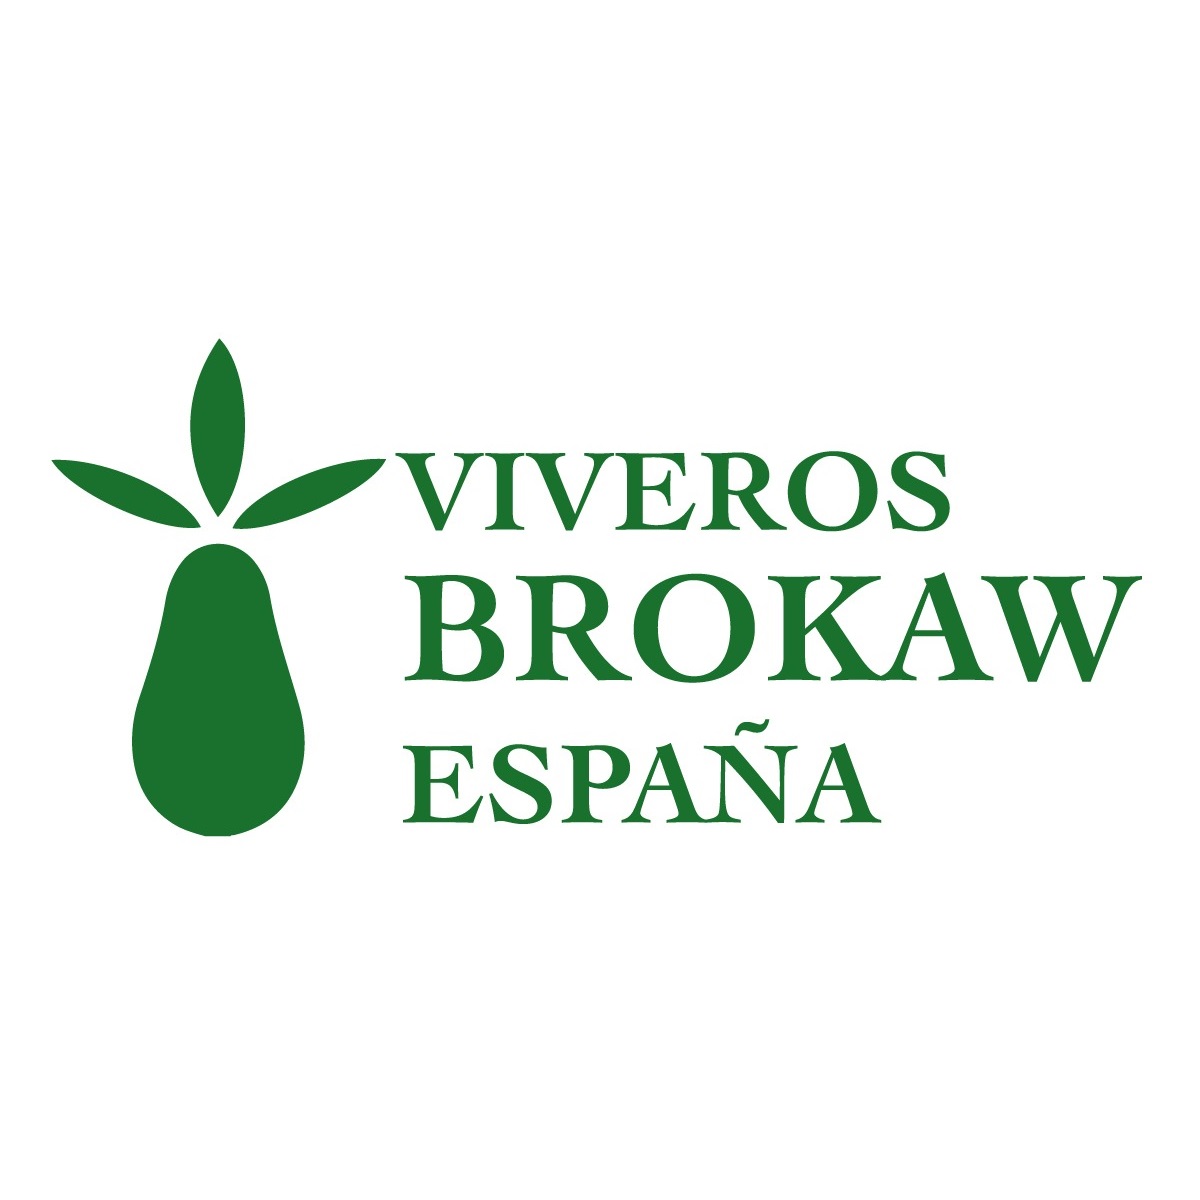 Viveros Brokaw España